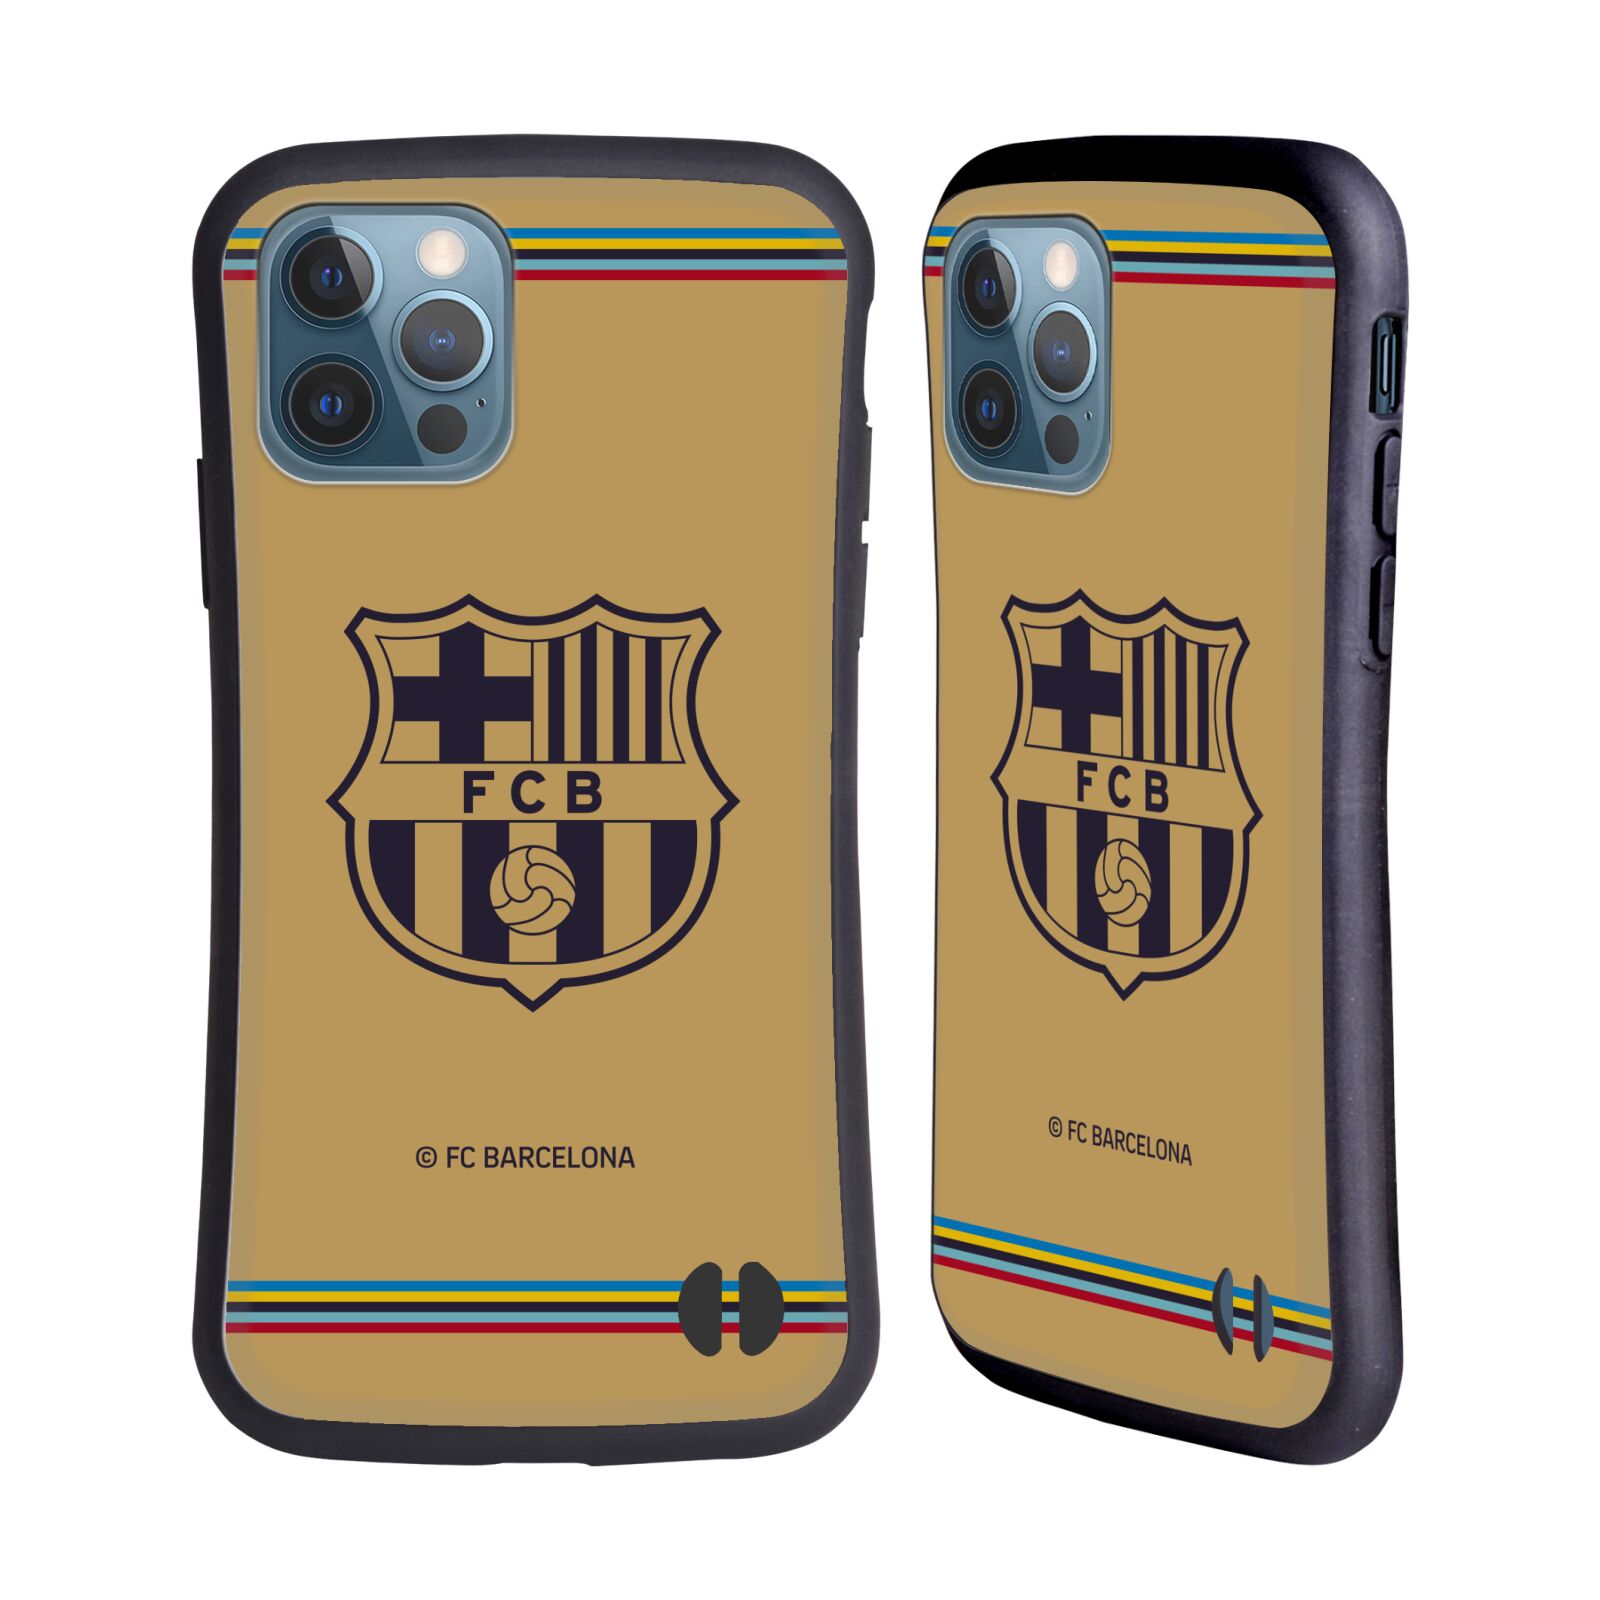 Odolný zadní obal pro mobil Apple iPhone 12 / iPhone 12 Pro - HEAD CASE - FC Barcelona - Hnědý dres